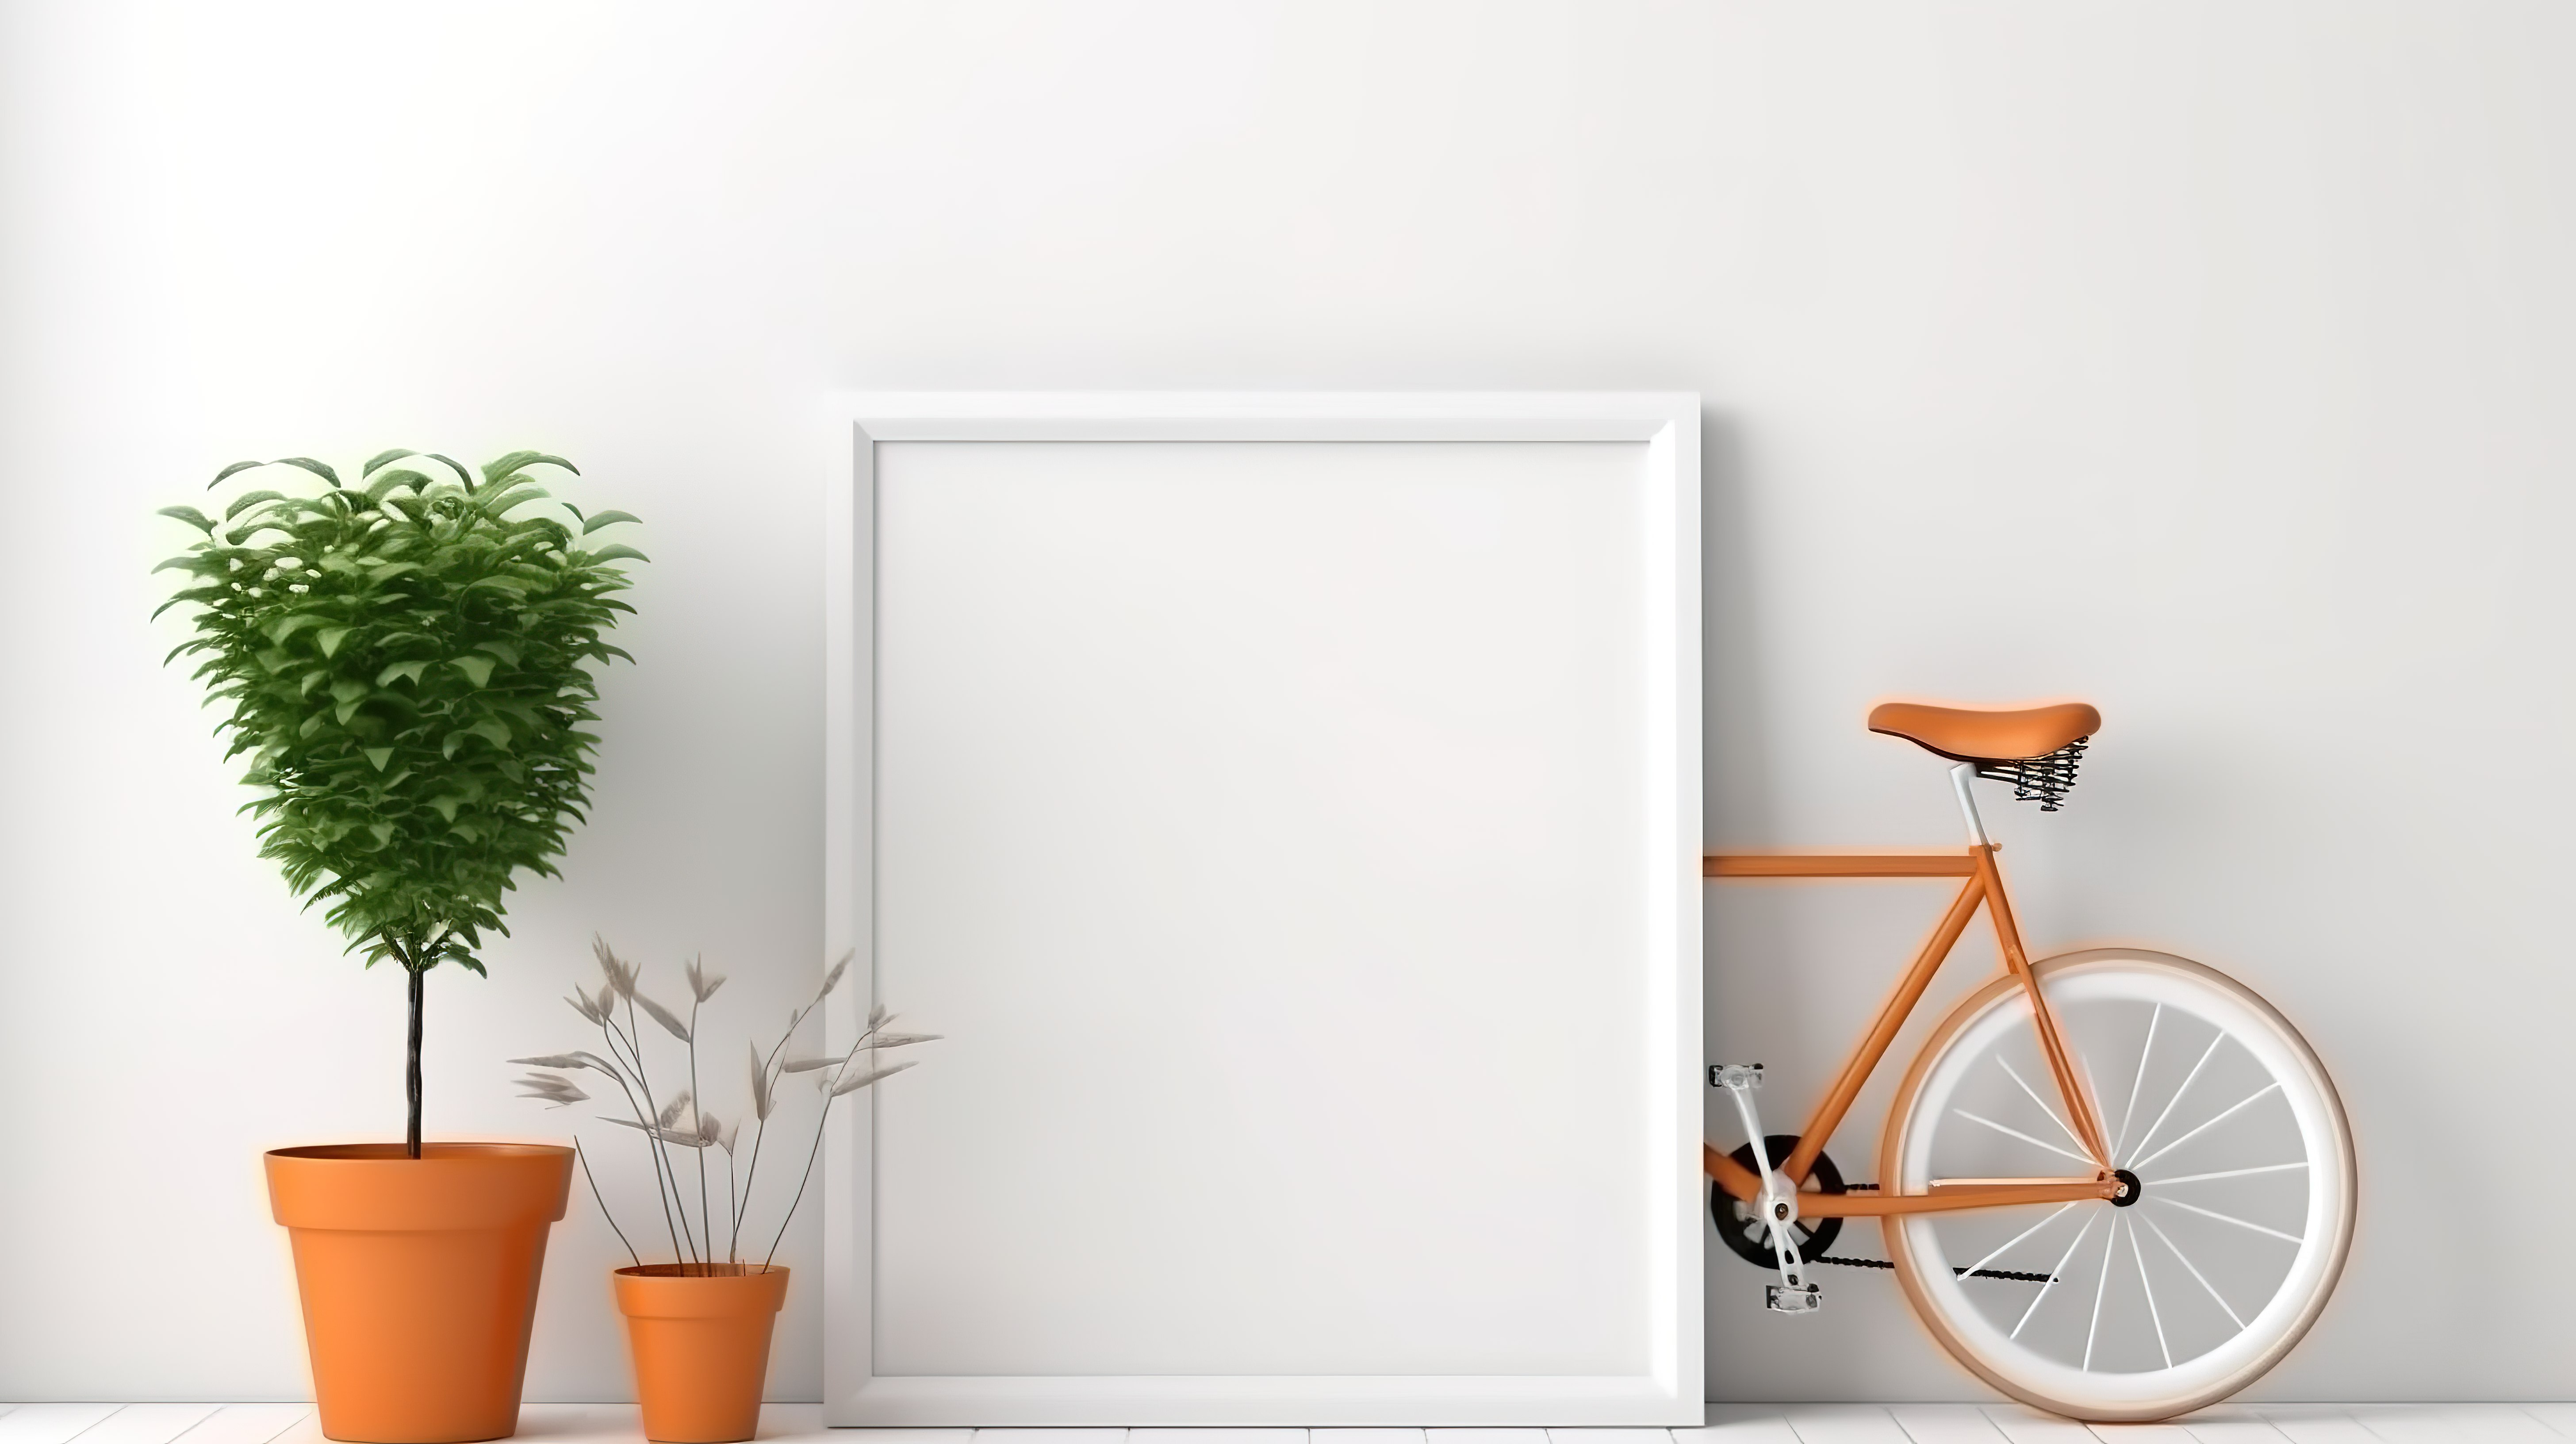 墙壁模型上的空相框和白色自行车 3D 渲染图片